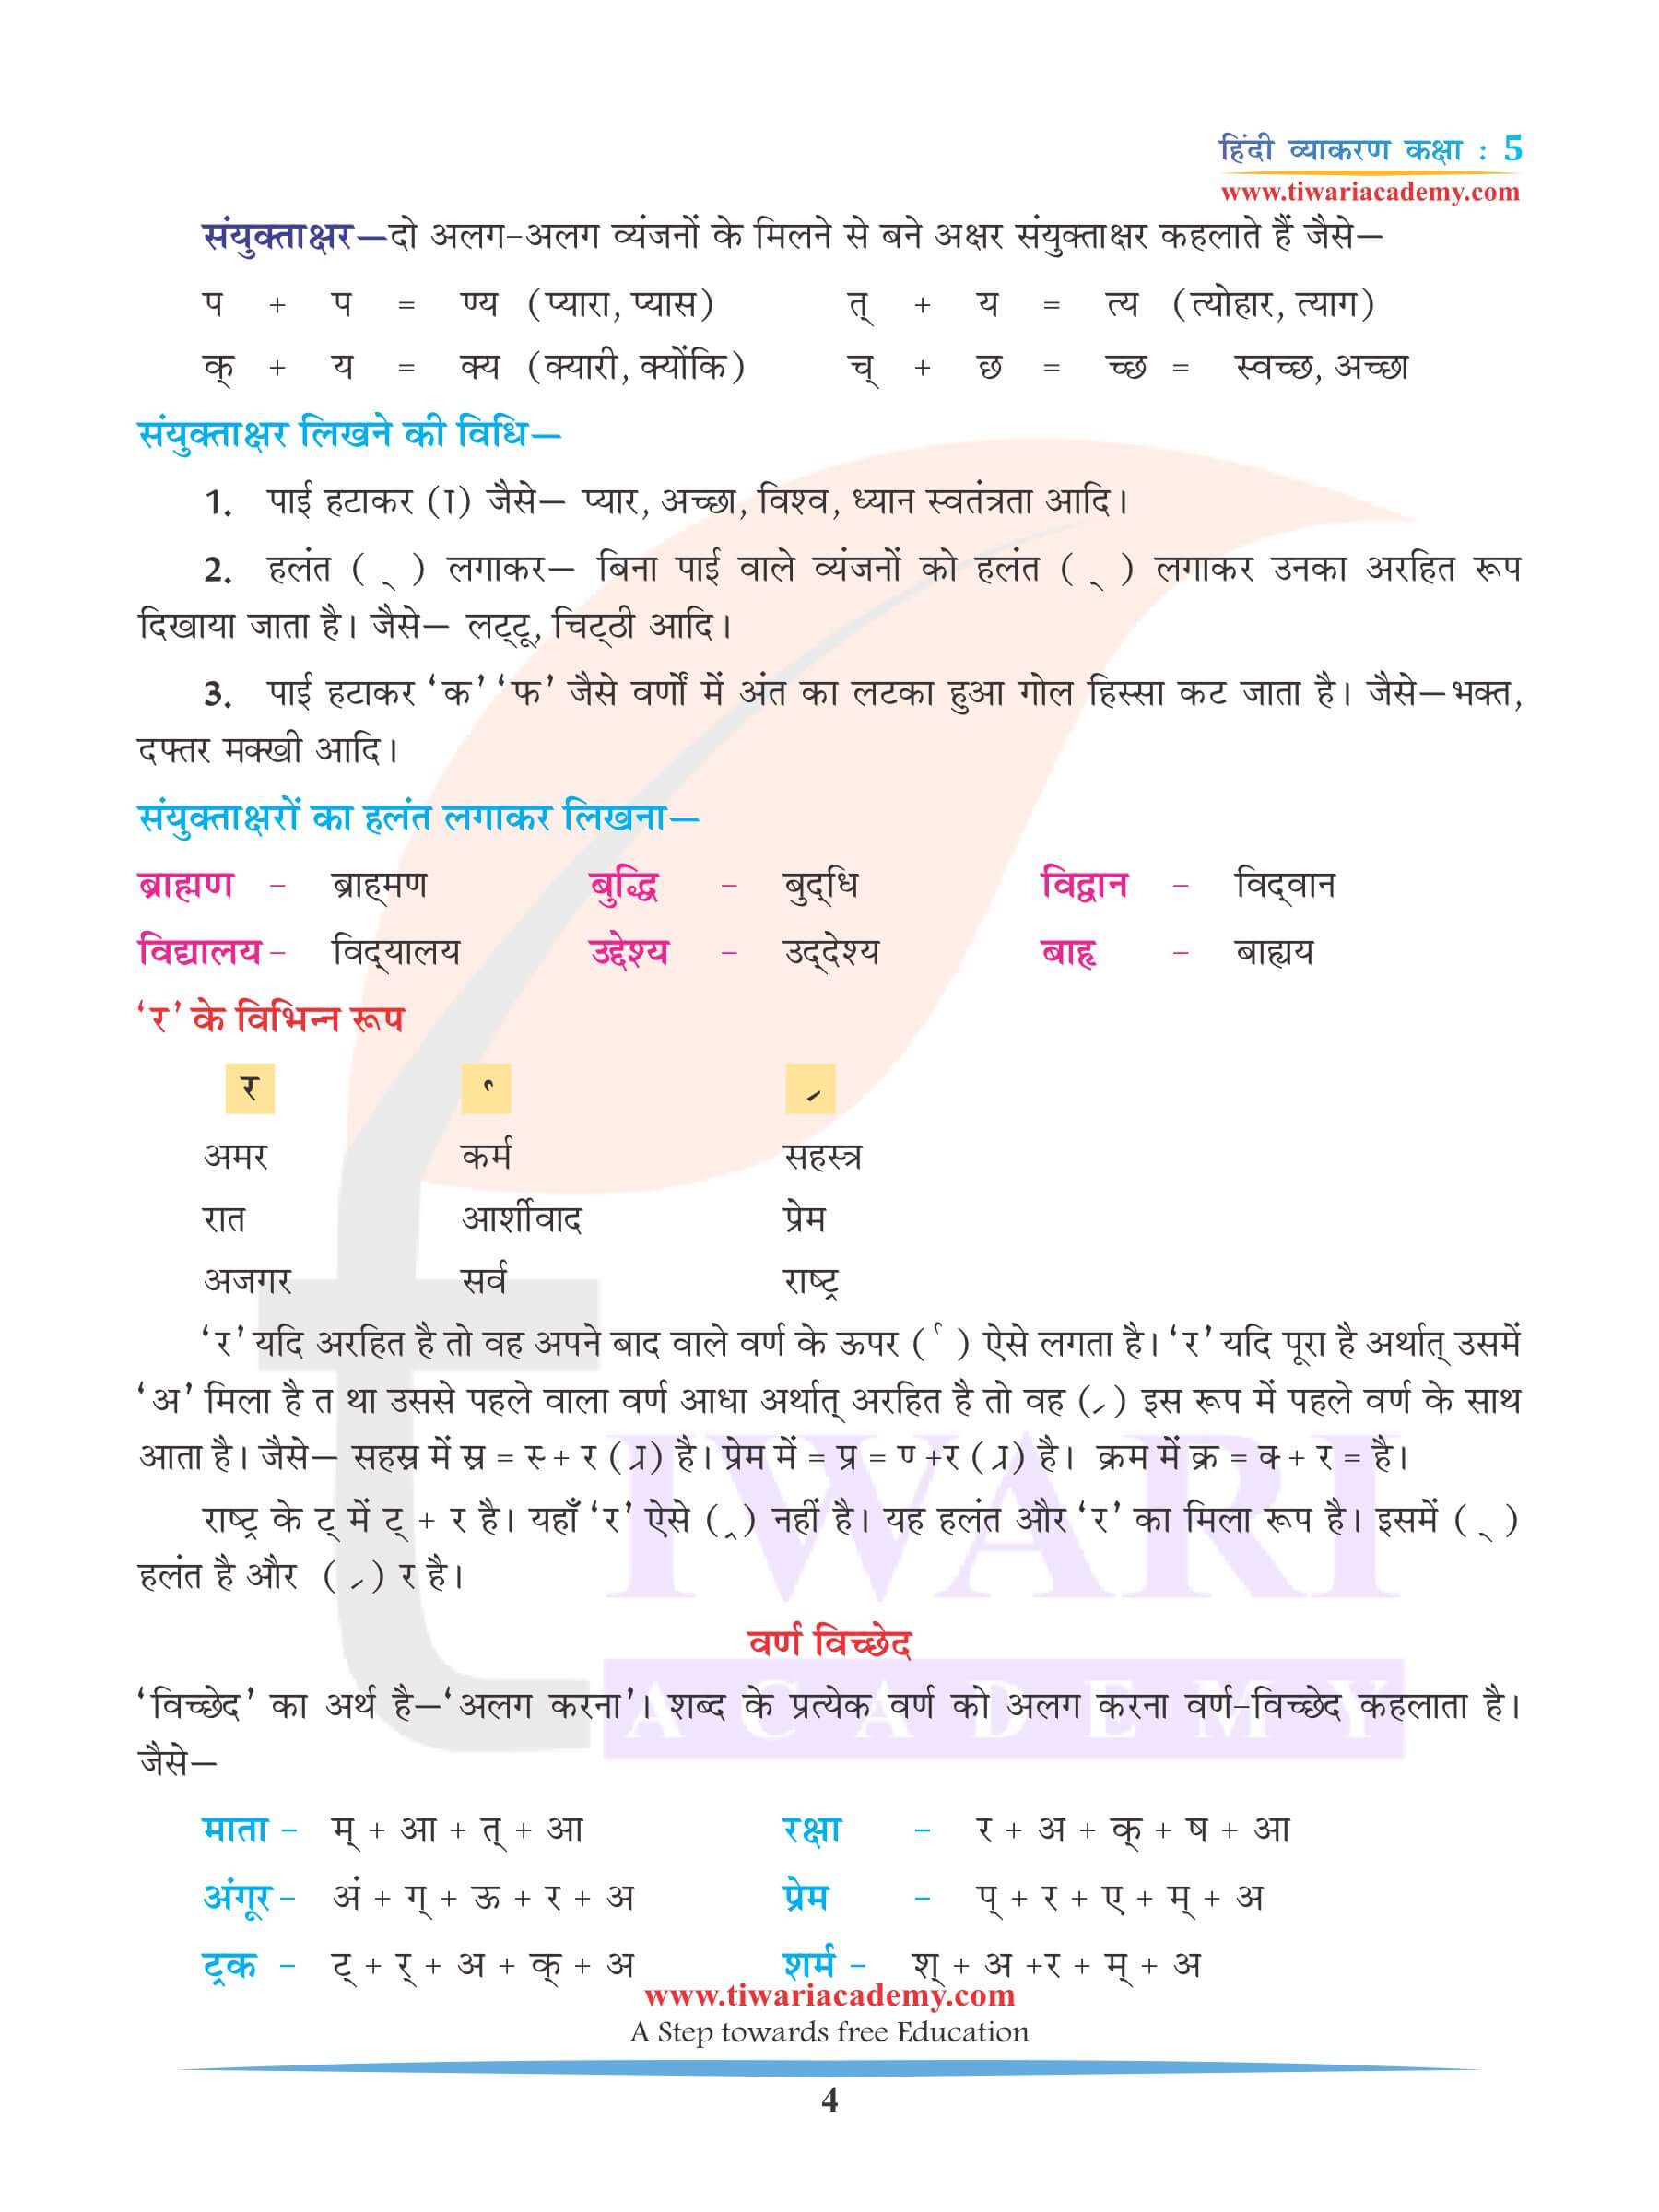 कक्षा 5 हिंदी व्याकरण अध्याय 2 वर्ण विचार के लिए अभ्यास